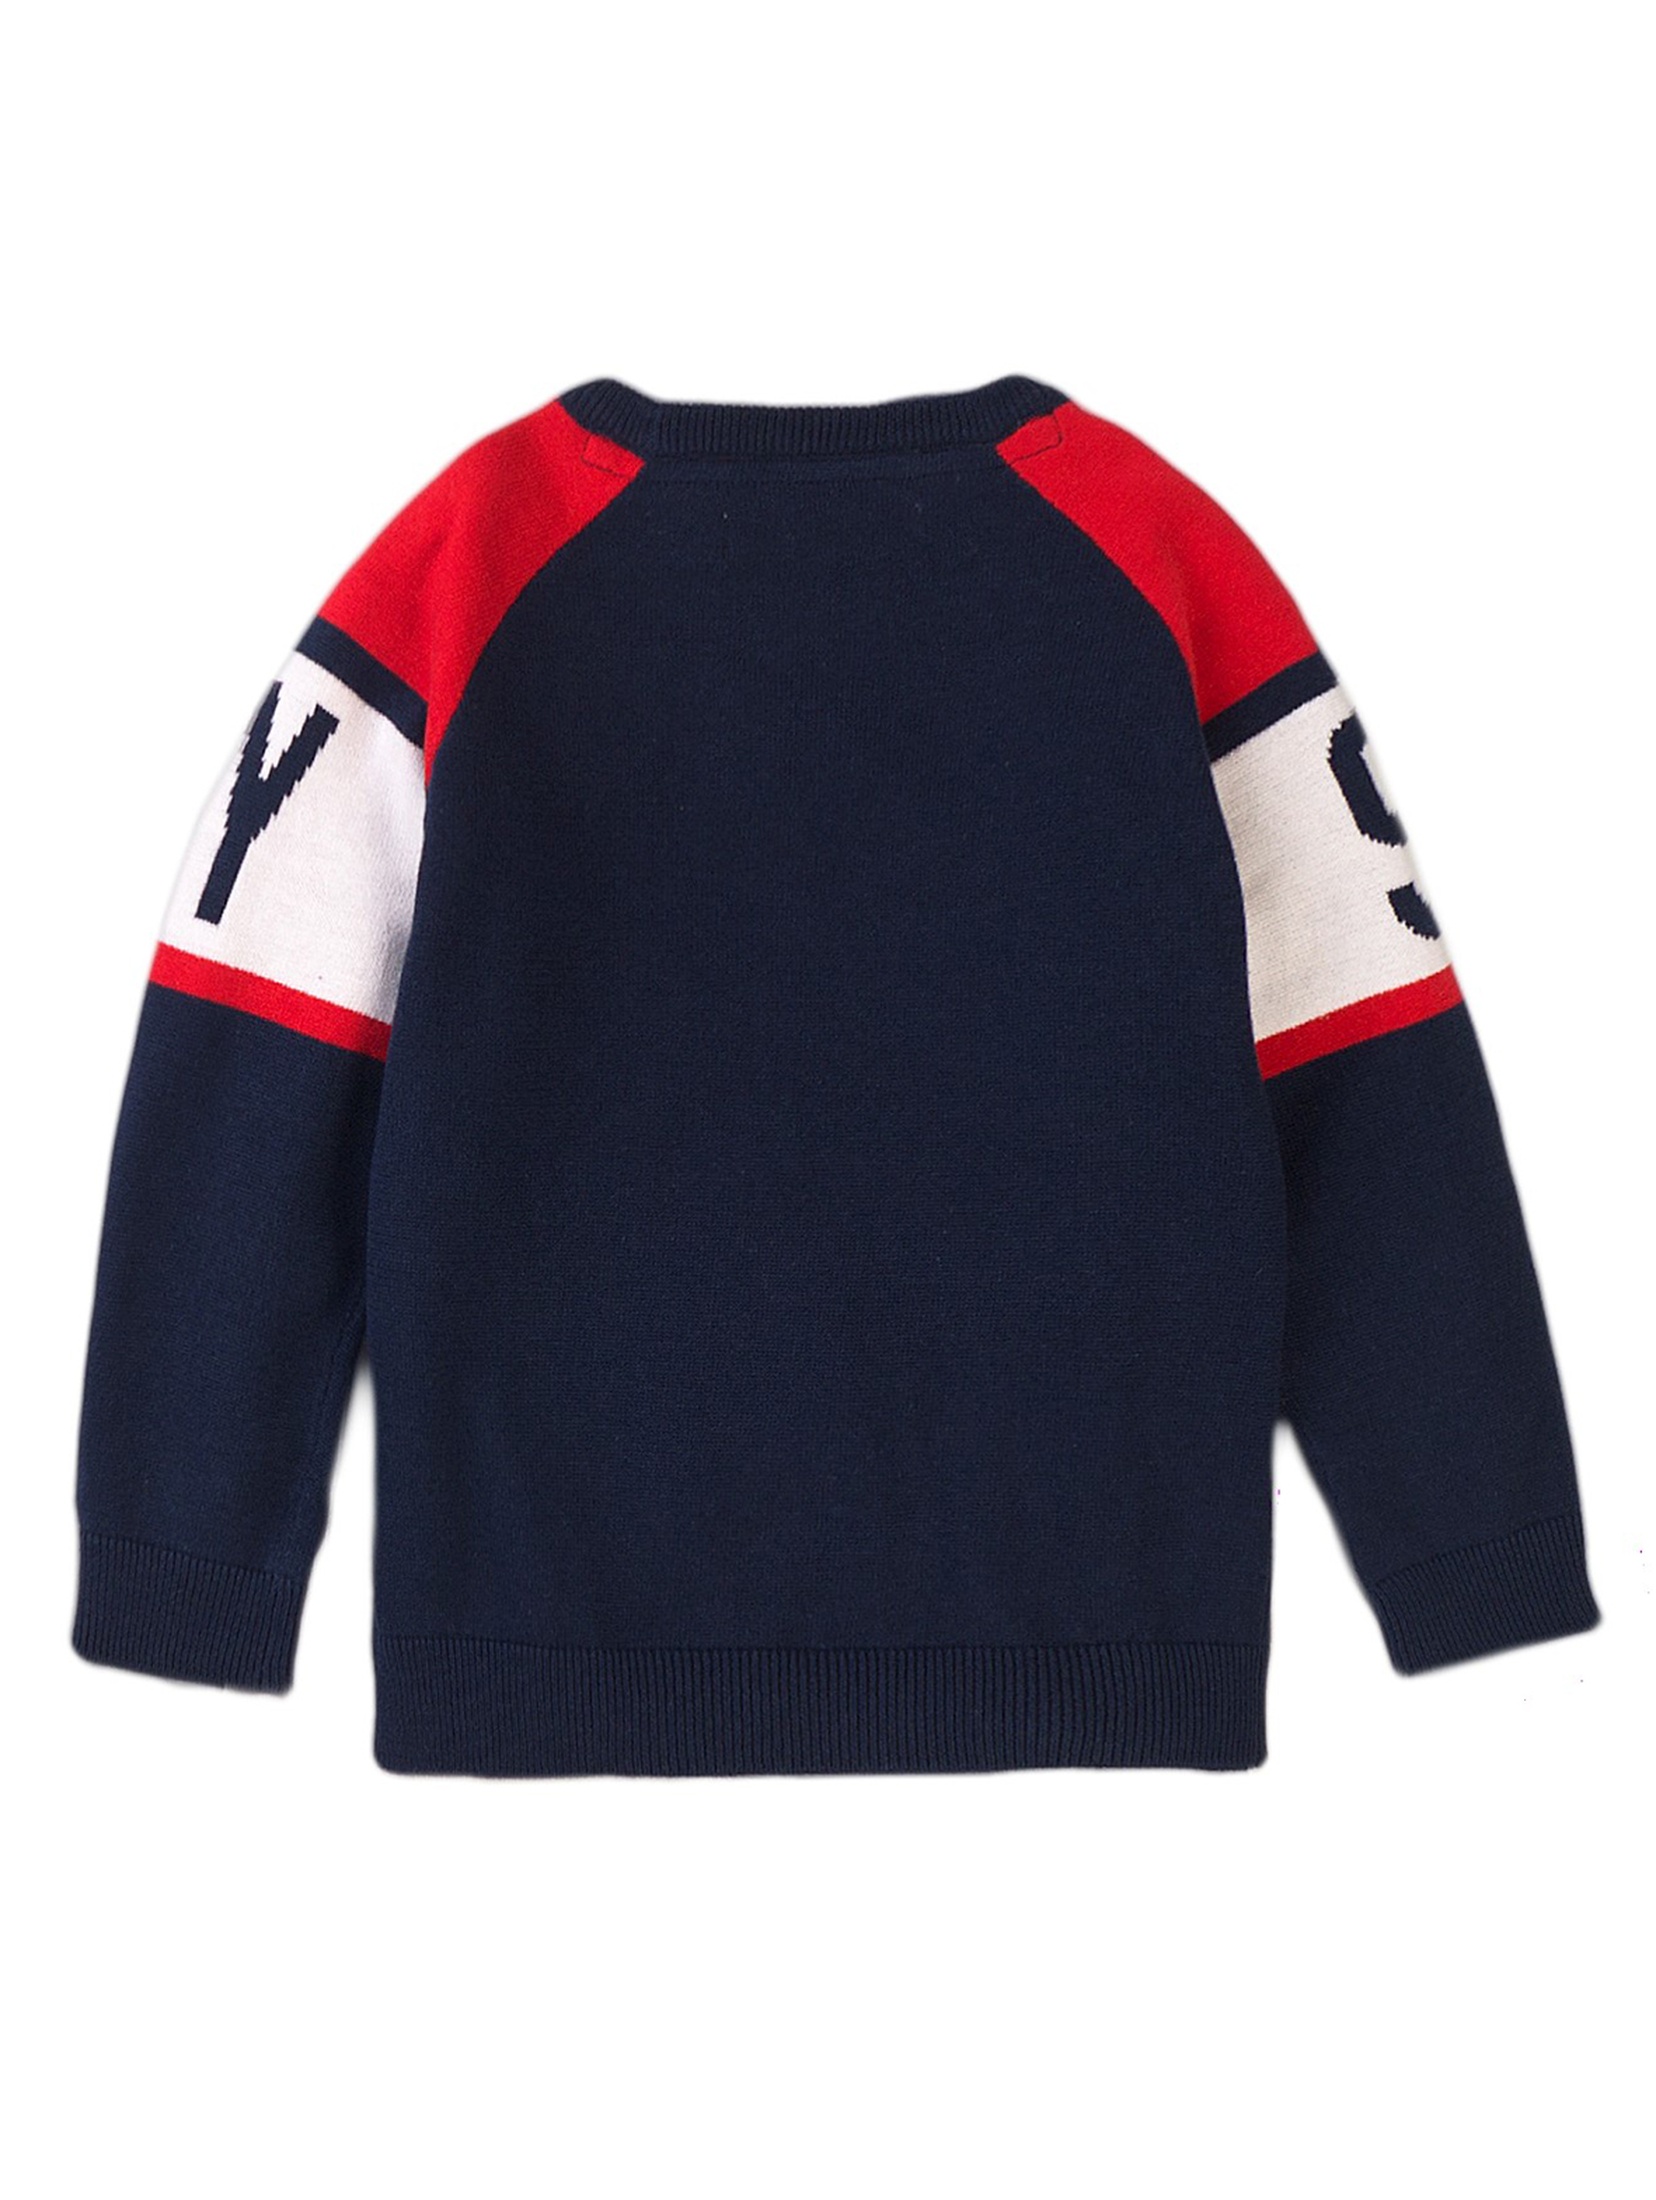 Sweter z okrągłym dekoltem oraz napisem w stylu sportowym dla chłopca